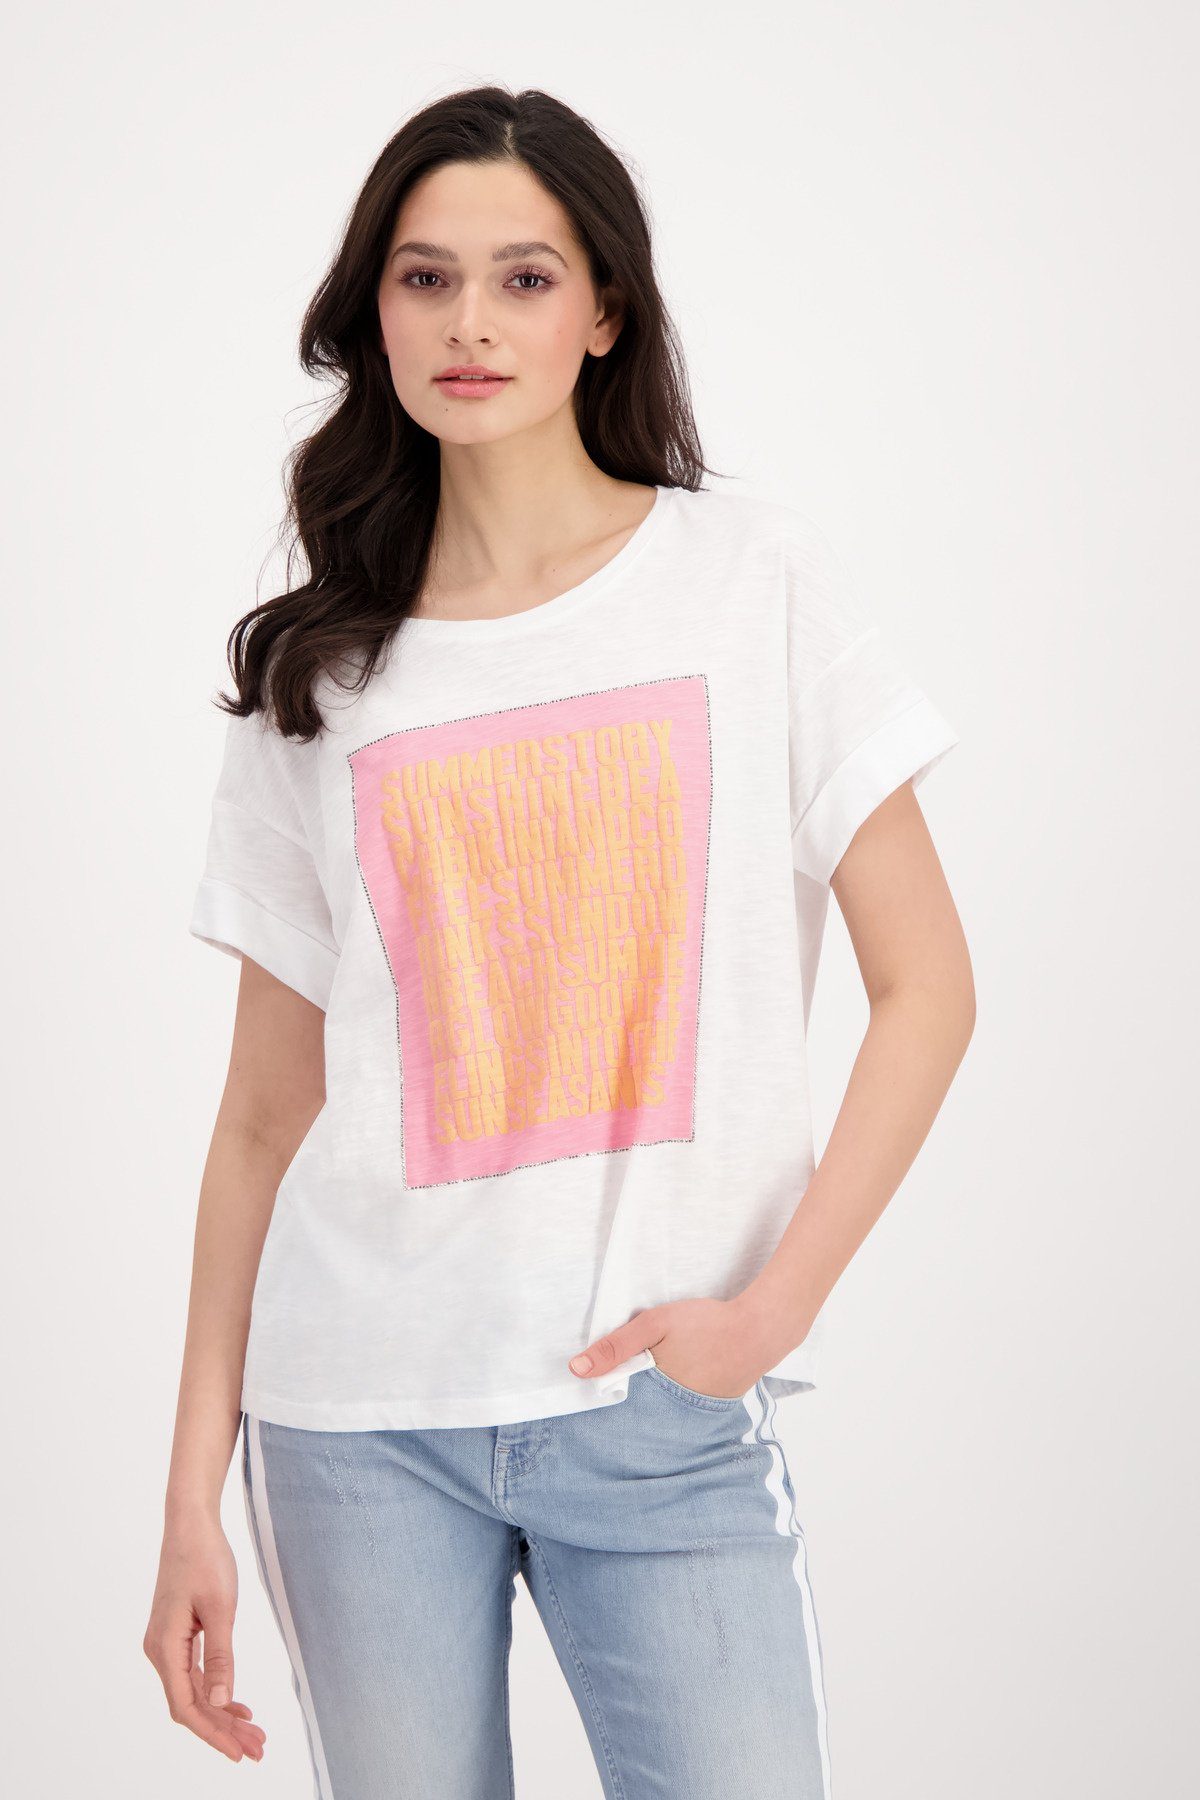 Monari T-Shirt Flammgarn Shirt 3D Schrift mit